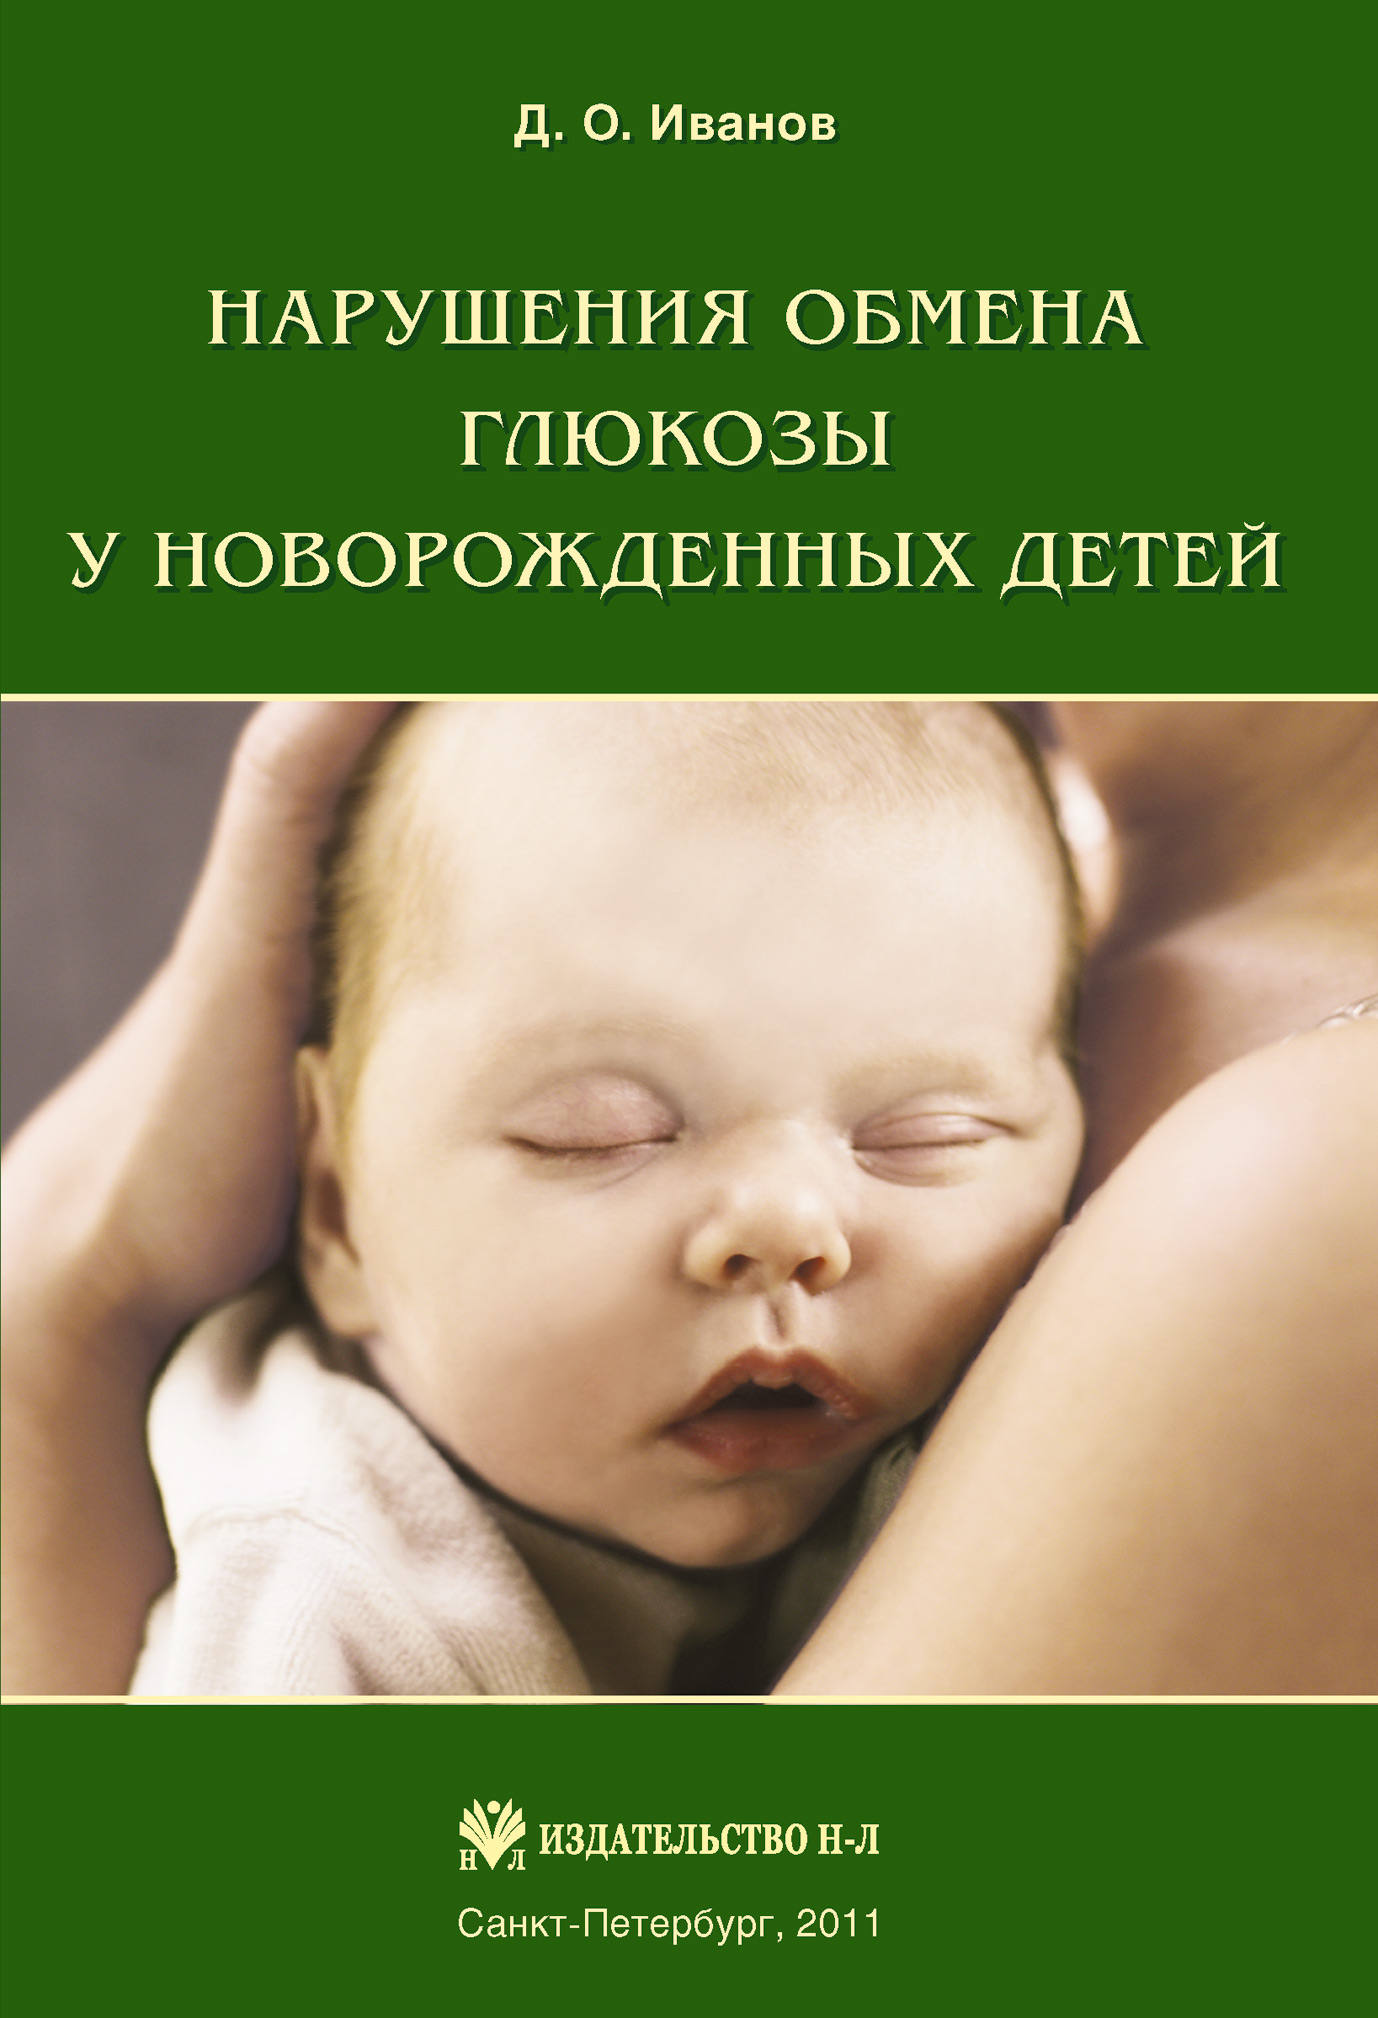 Книга Нарушения обмена глюкозы у новорожденных детей из серии , созданная Дмитрий Иванов, может относится к жанру Медицина. Стоимость книги Нарушения обмена глюкозы у новорожденных детей  с идентификатором 4246295 составляет 79.99 руб.